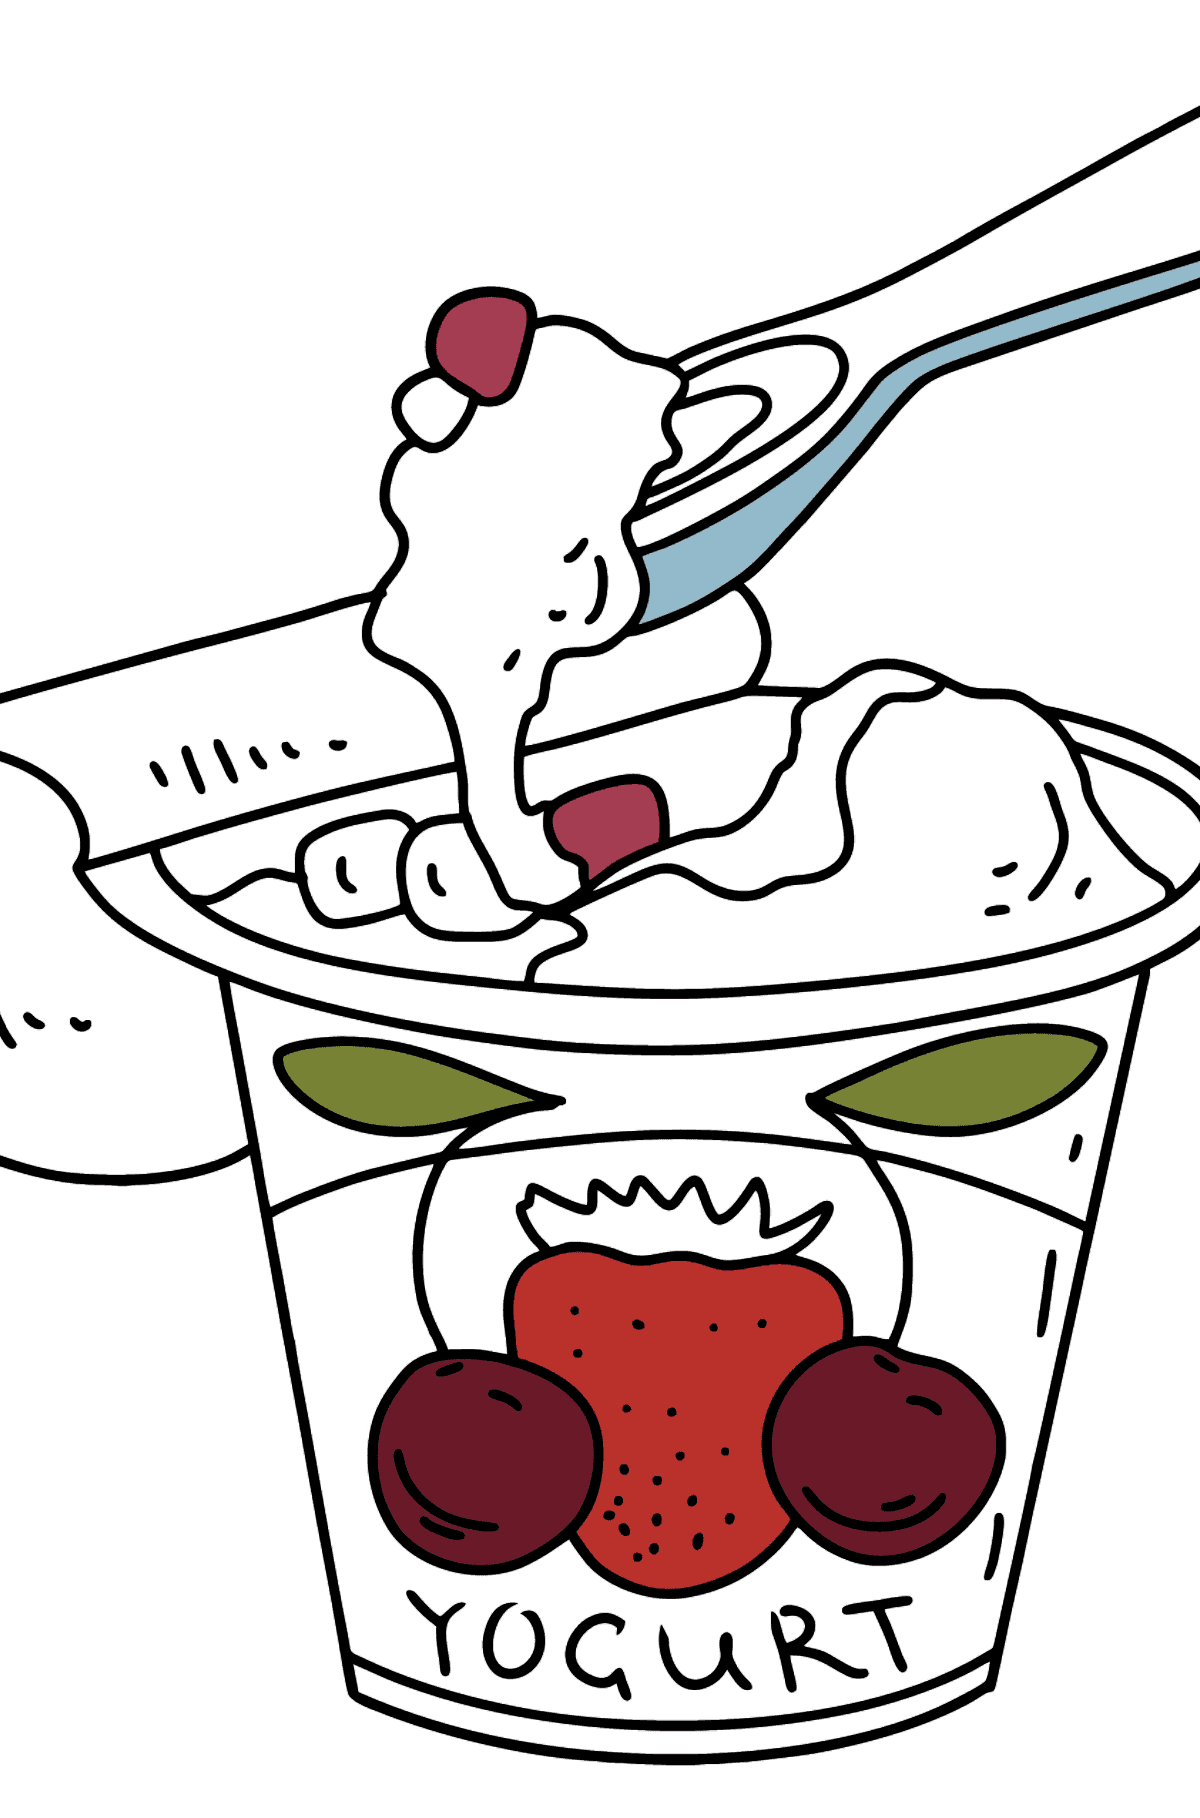 Boyama sayfası çilekli yoğurt - Boyamalar çocuklar için